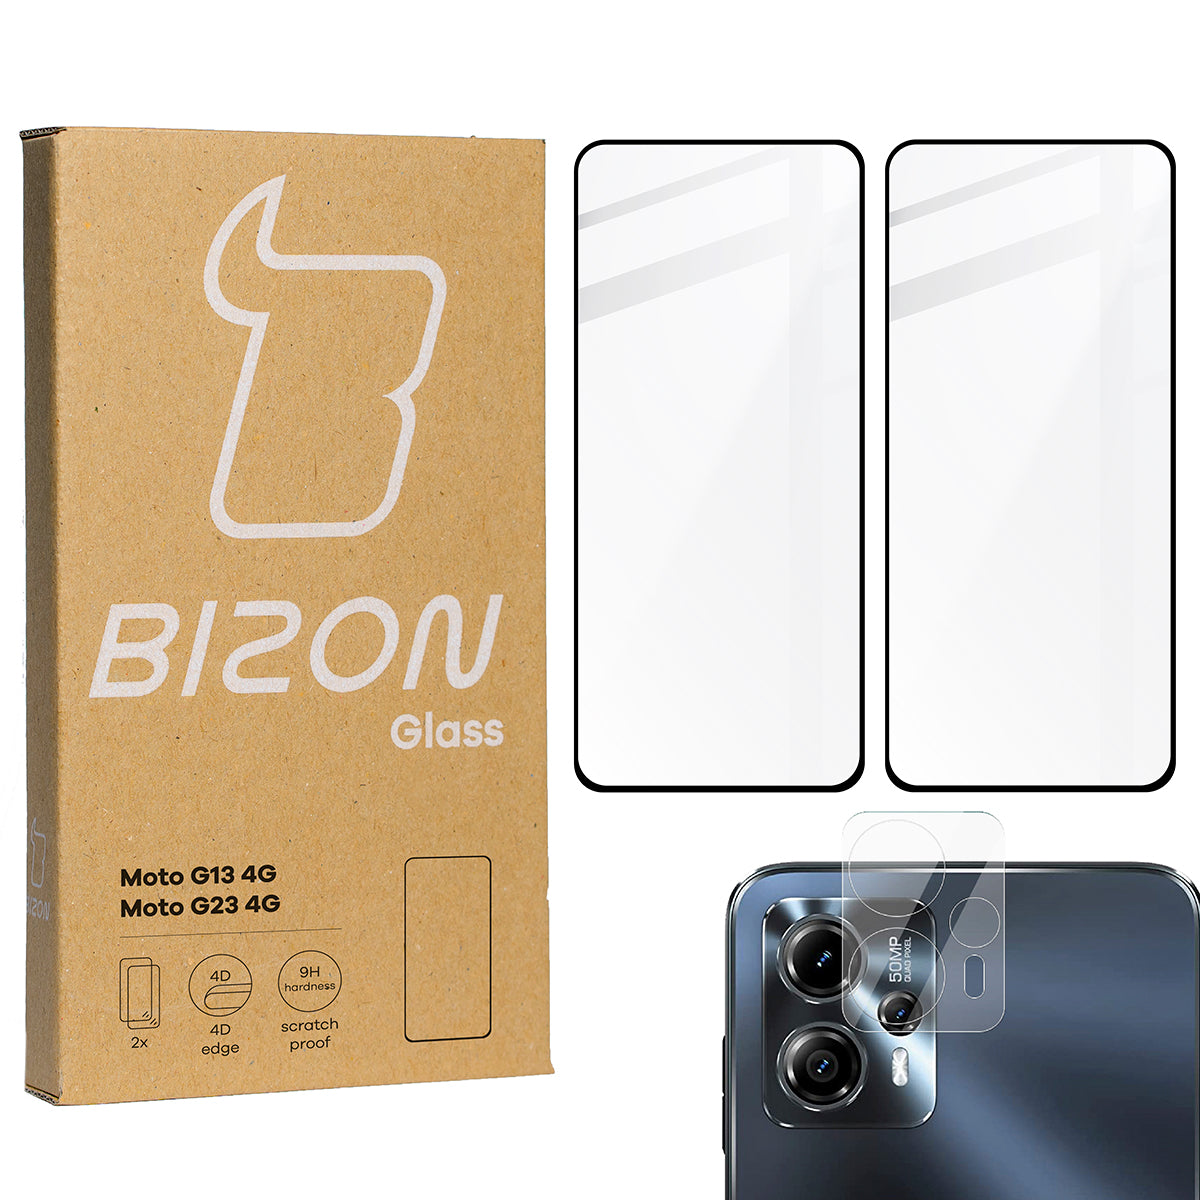 Gehärtetes Glas Bizon Glass Edge 2 - 2 Stück + Kameraschutz für Moto G13/G23 4G, Schwarz